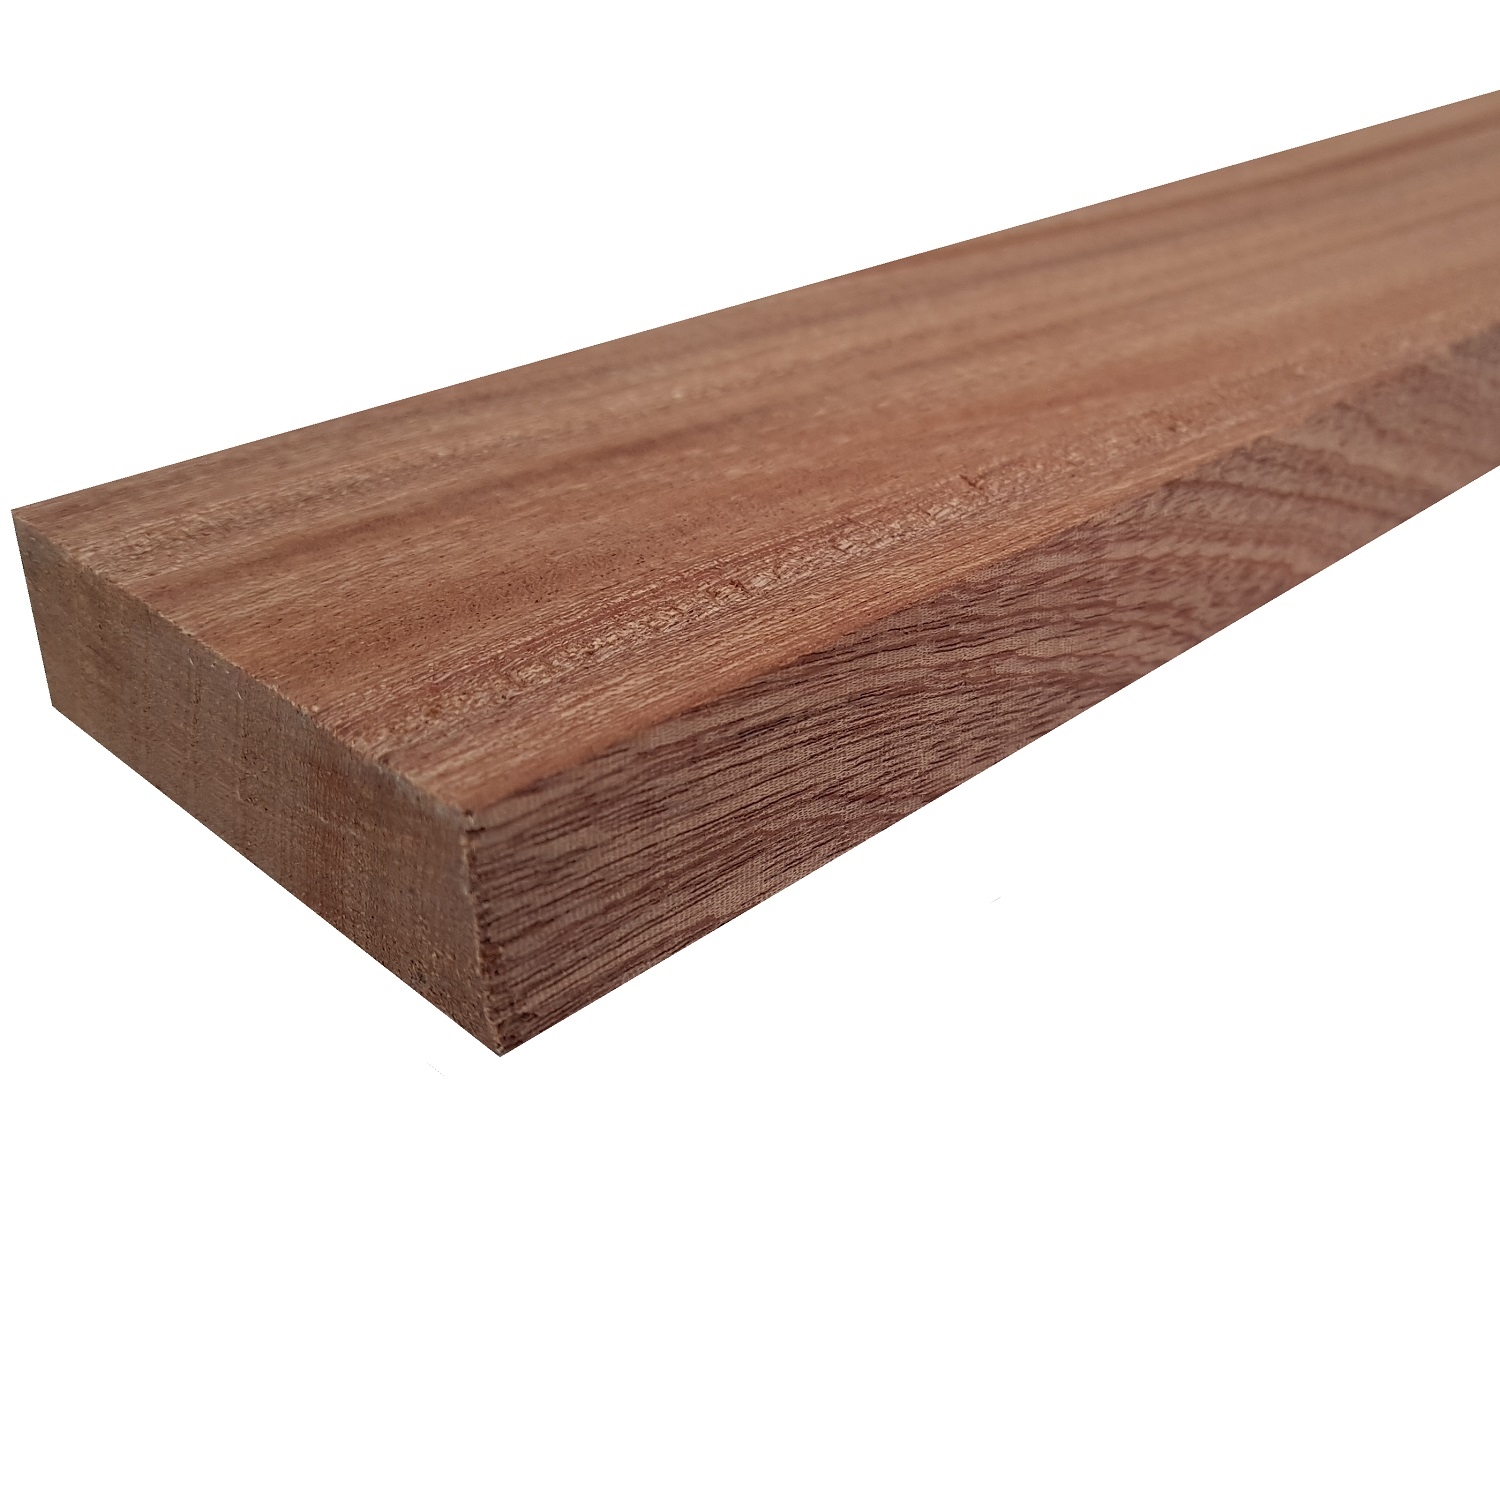 Tavola legno Mogano Piallata mm 21 x 230 x 1550